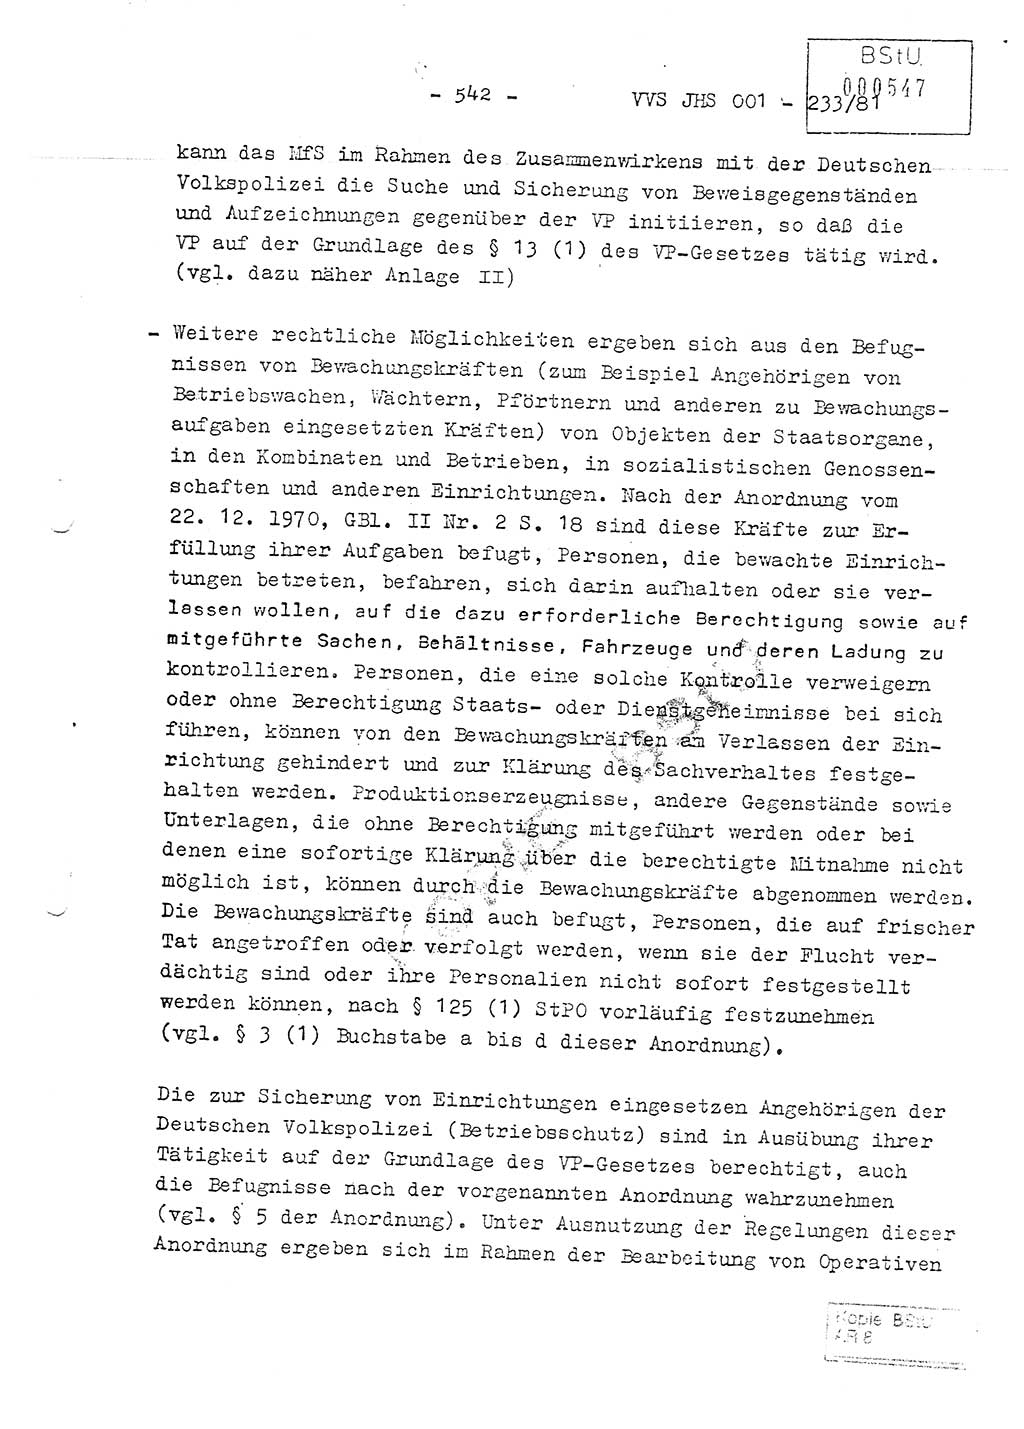 Dissertation Oberstleutnant Horst Zank (JHS), Oberstleutnant Dr. Karl-Heinz Knoblauch (JHS), Oberstleutnant Gustav-Adolf Kowalewski (HA Ⅸ), Oberstleutnant Wolfgang Plötner (HA Ⅸ), Ministerium für Staatssicherheit (MfS) [Deutsche Demokratische Republik (DDR)], Juristische Hochschule (JHS), Vertrauliche Verschlußsache (VVS) o001-233/81, Potsdam 1981, Blatt 542 (Diss. MfS DDR JHS VVS o001-233/81 1981, Bl. 542)